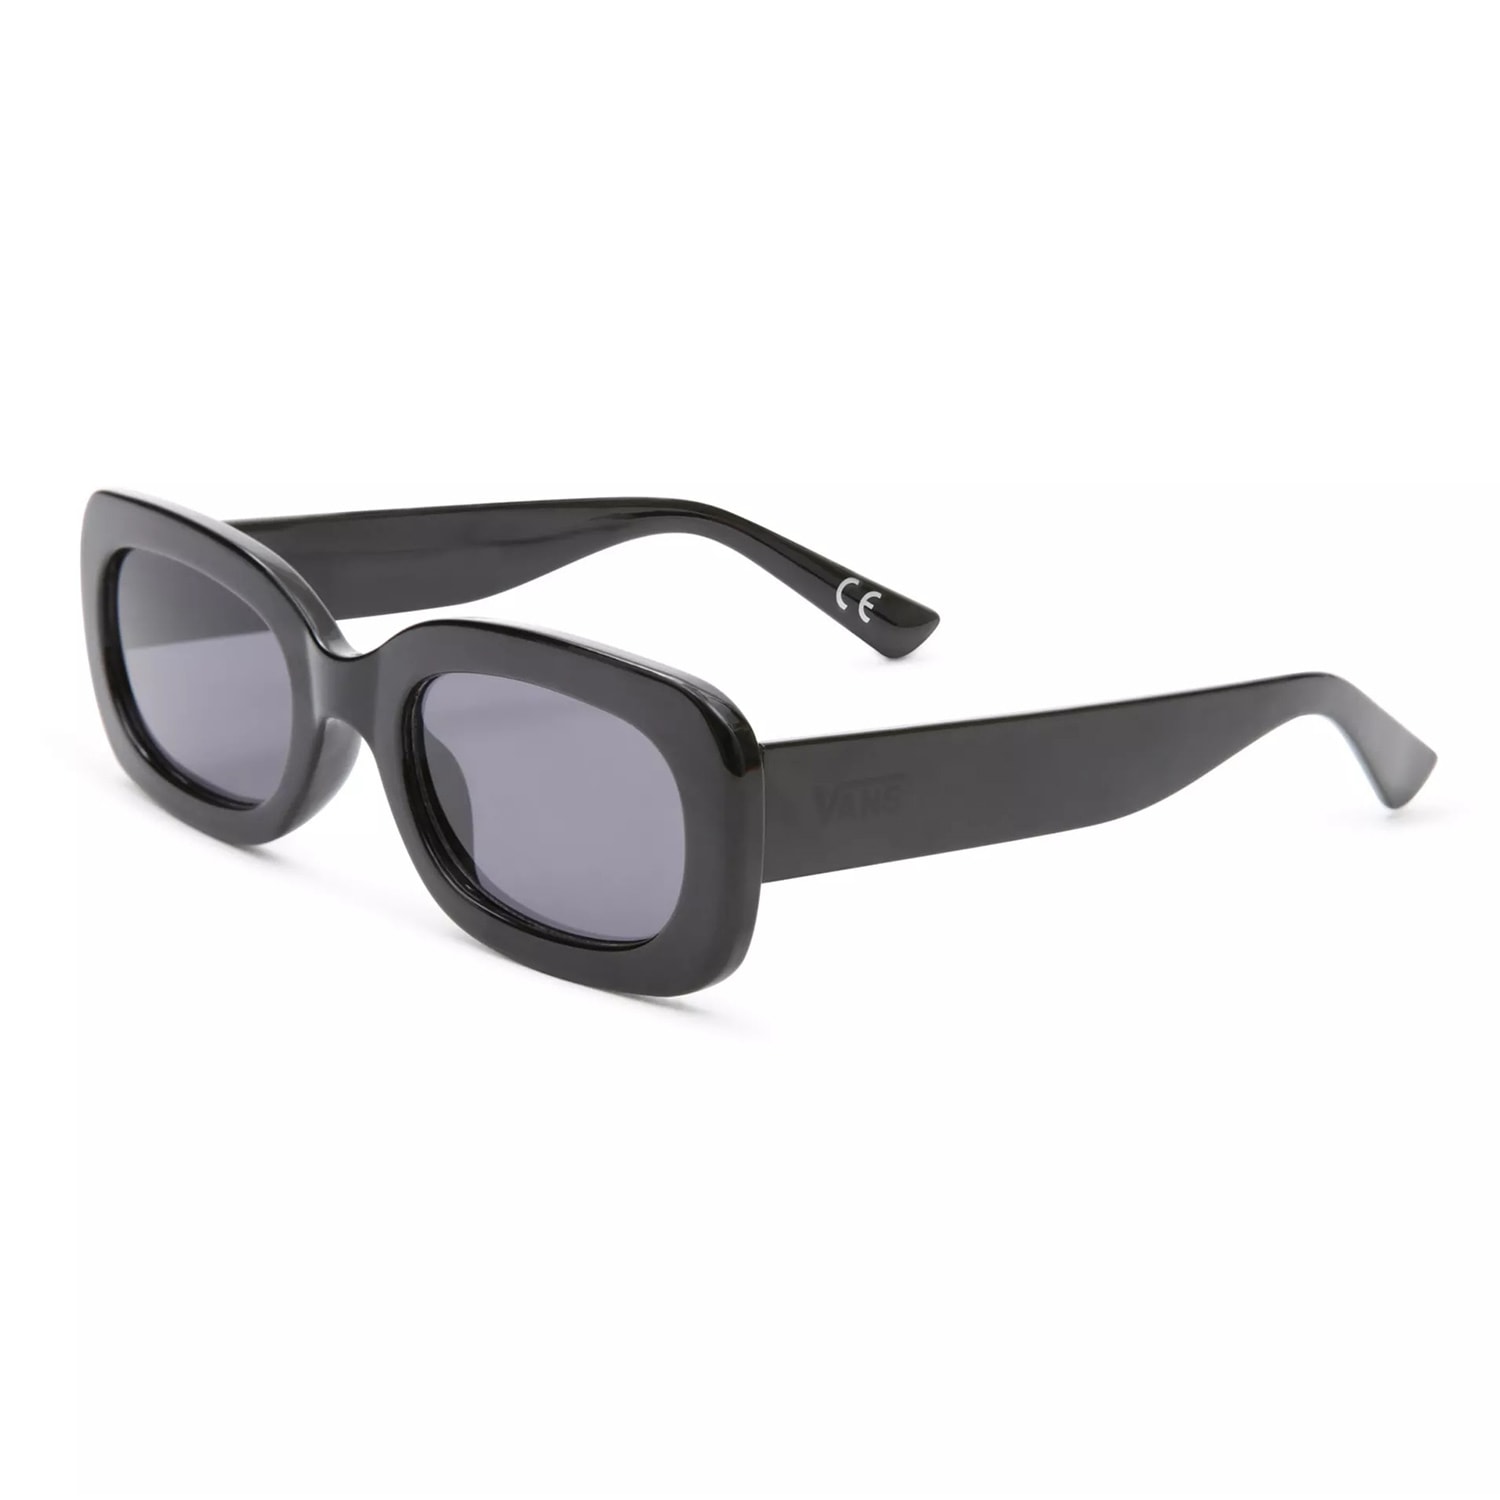 Sunglasses Vans Westview Shades black | Zezula